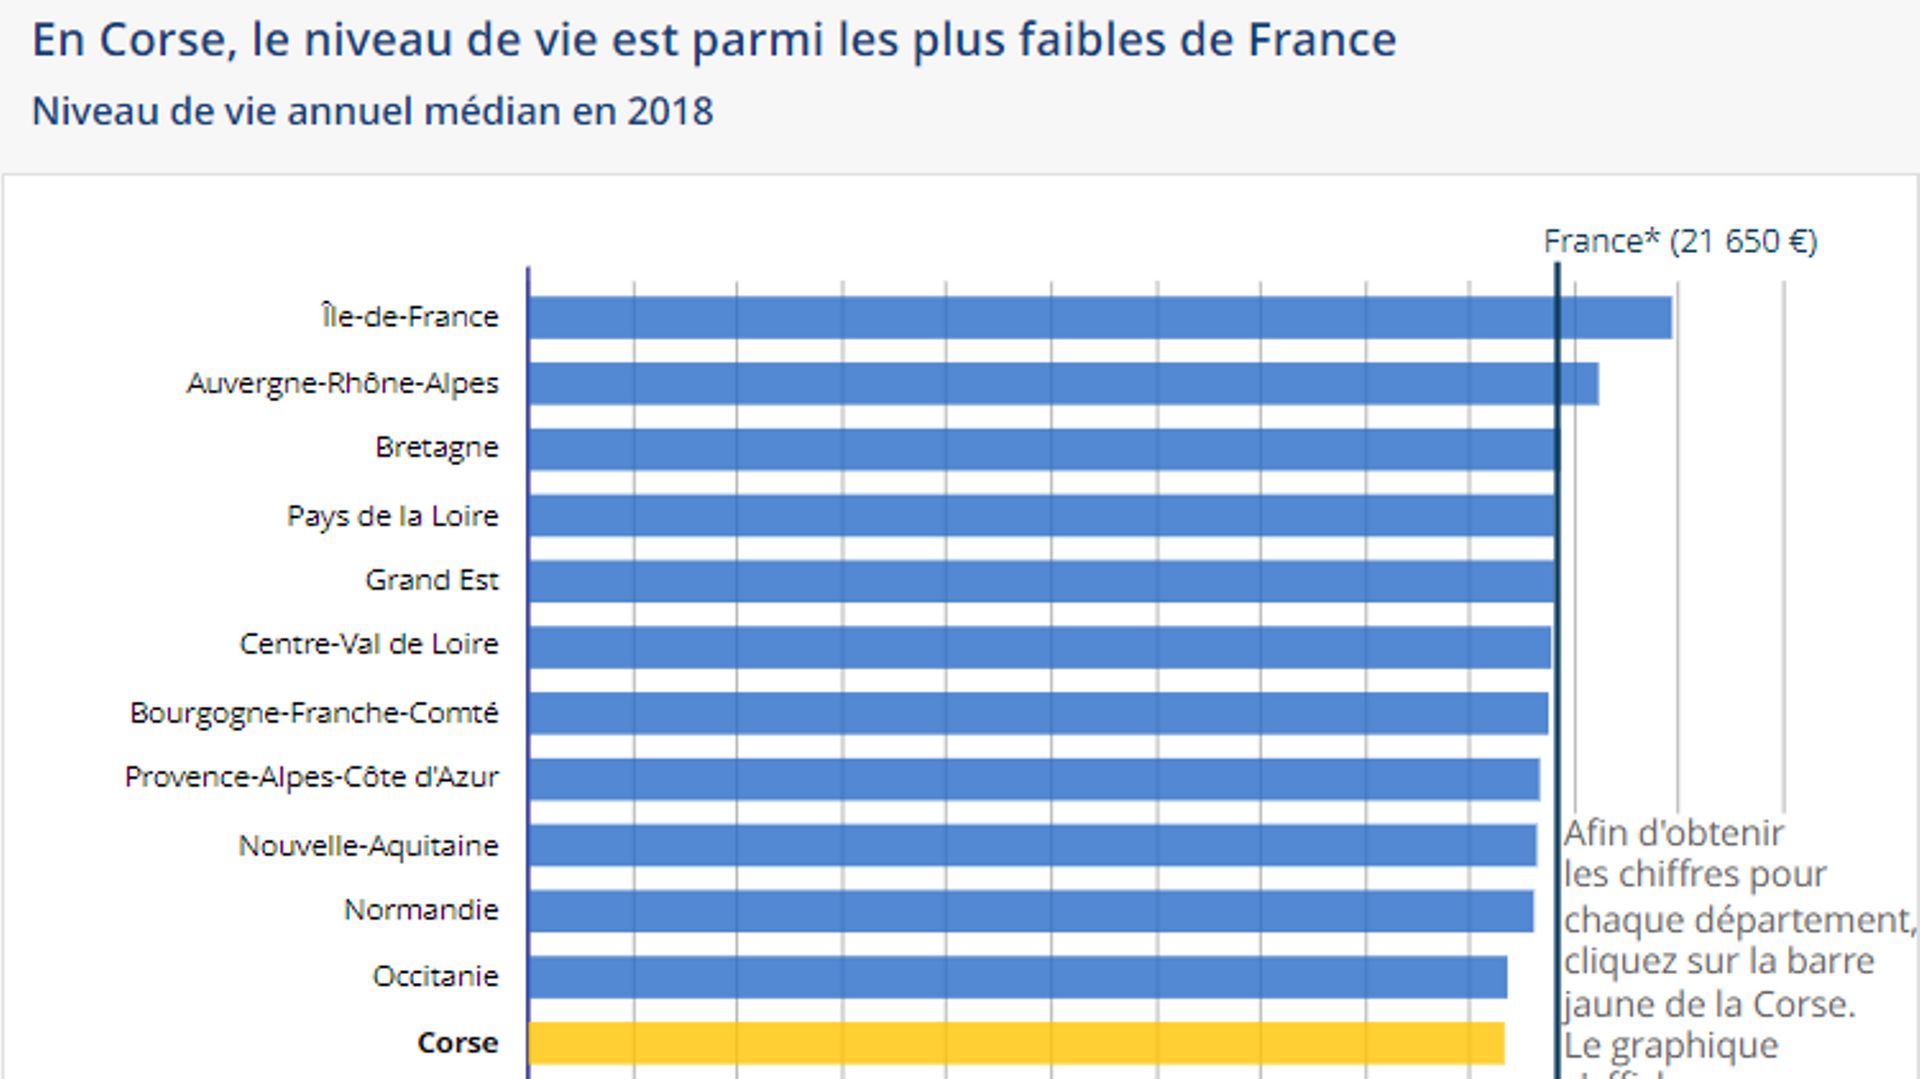 En Corse, le niveau de vie est parmi les plus faibles de France.